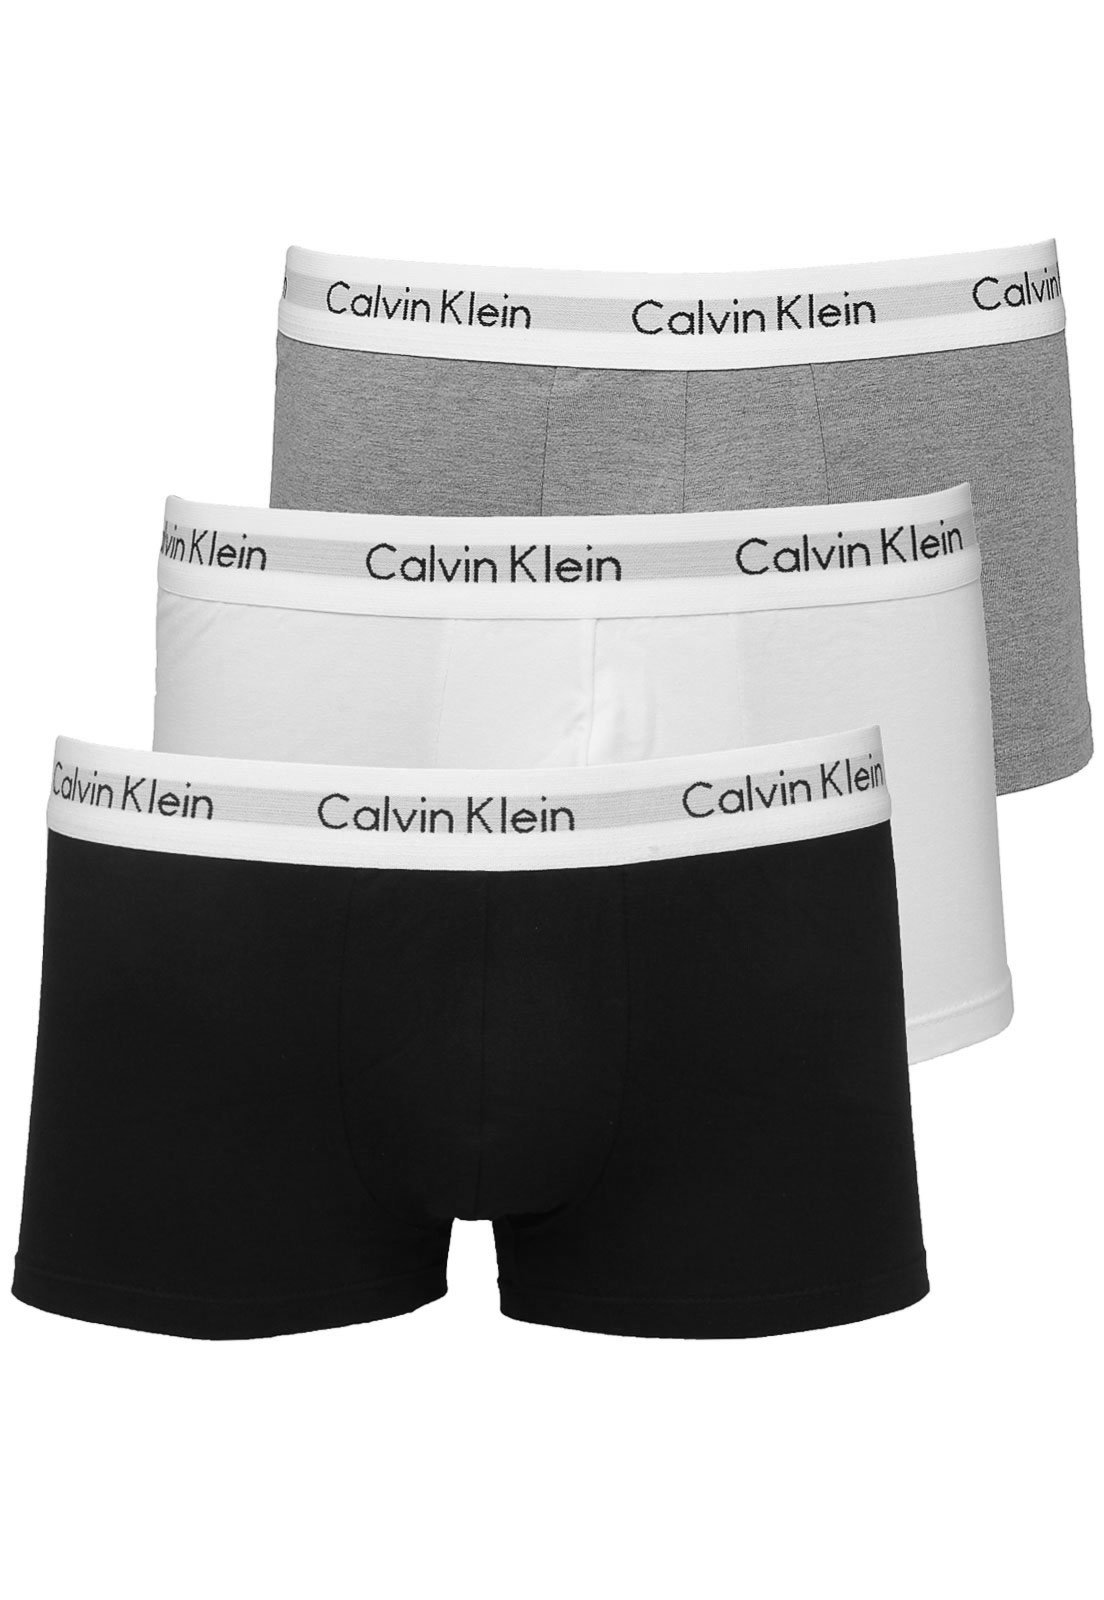 https://static.dafiti.com.br/p/Calvin-Klein-Underwear-Kit-3p%C3%A7s-Cuecas-Calvin-Klein-Underwear-Slip-Cinza/Preto/Branco-7008-7729801-1-zoom.jpg